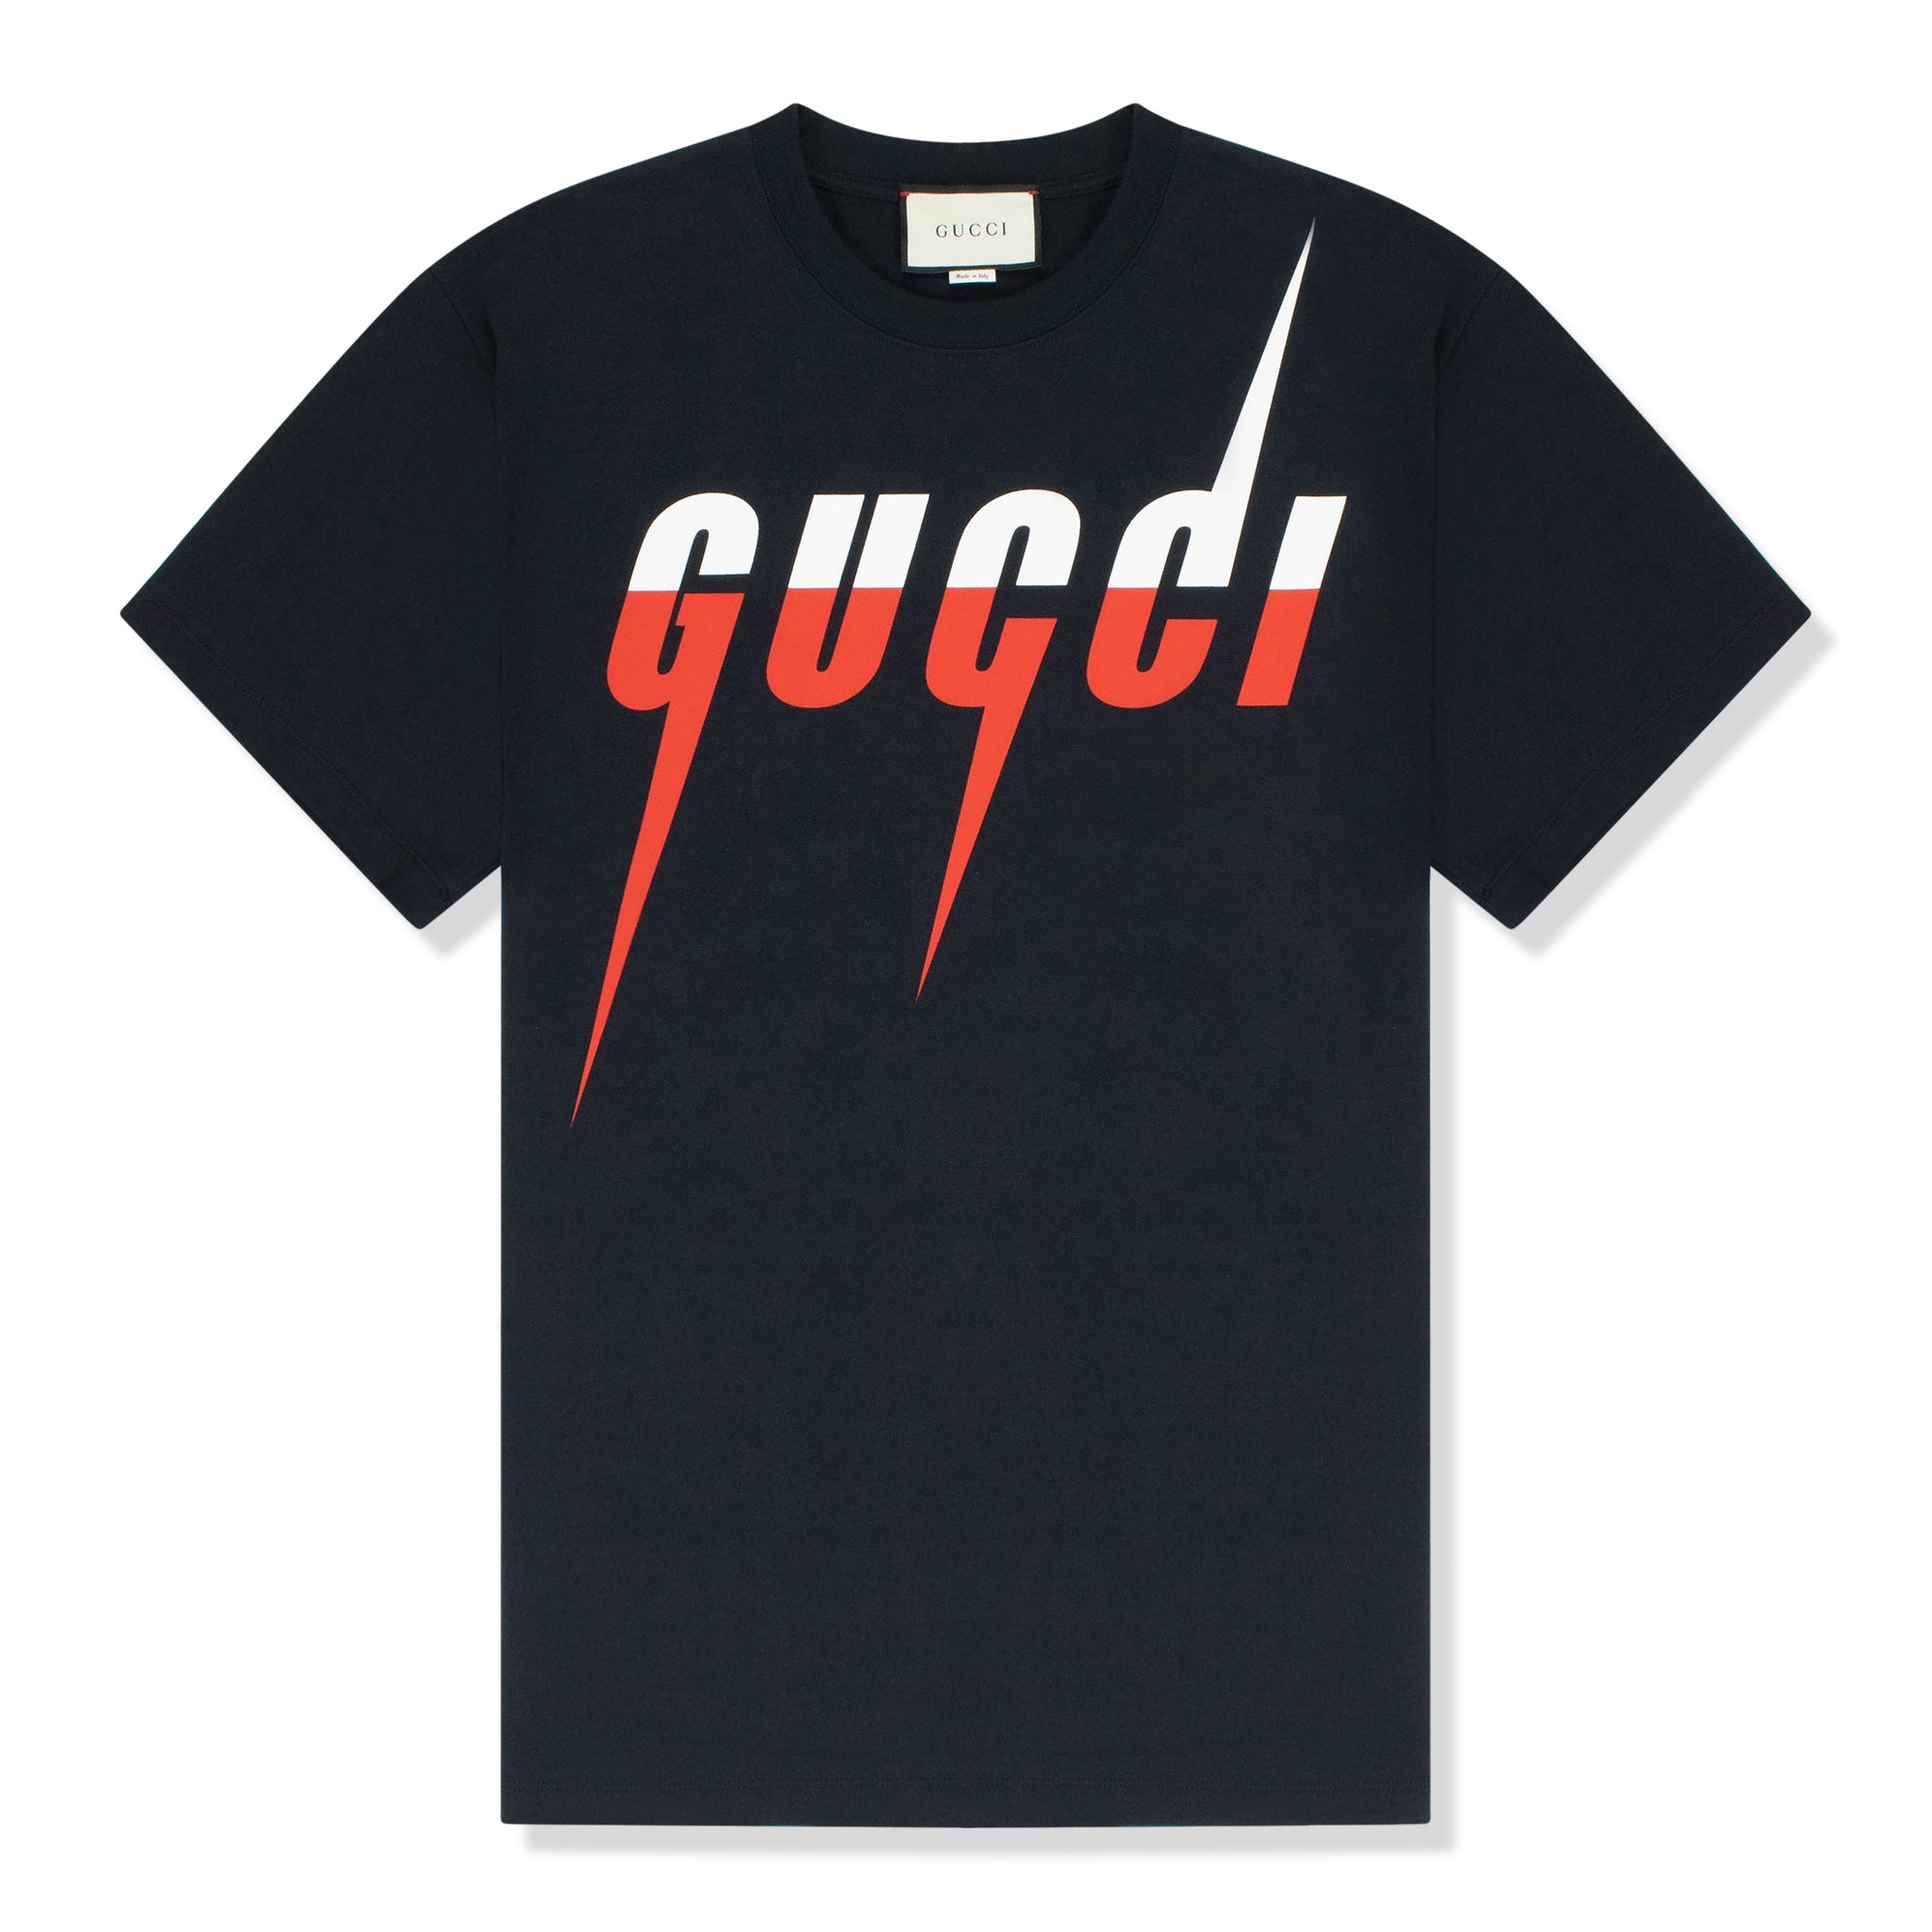 Gucci Blade Print Black T Shirt & 565806 XJAZY 1141